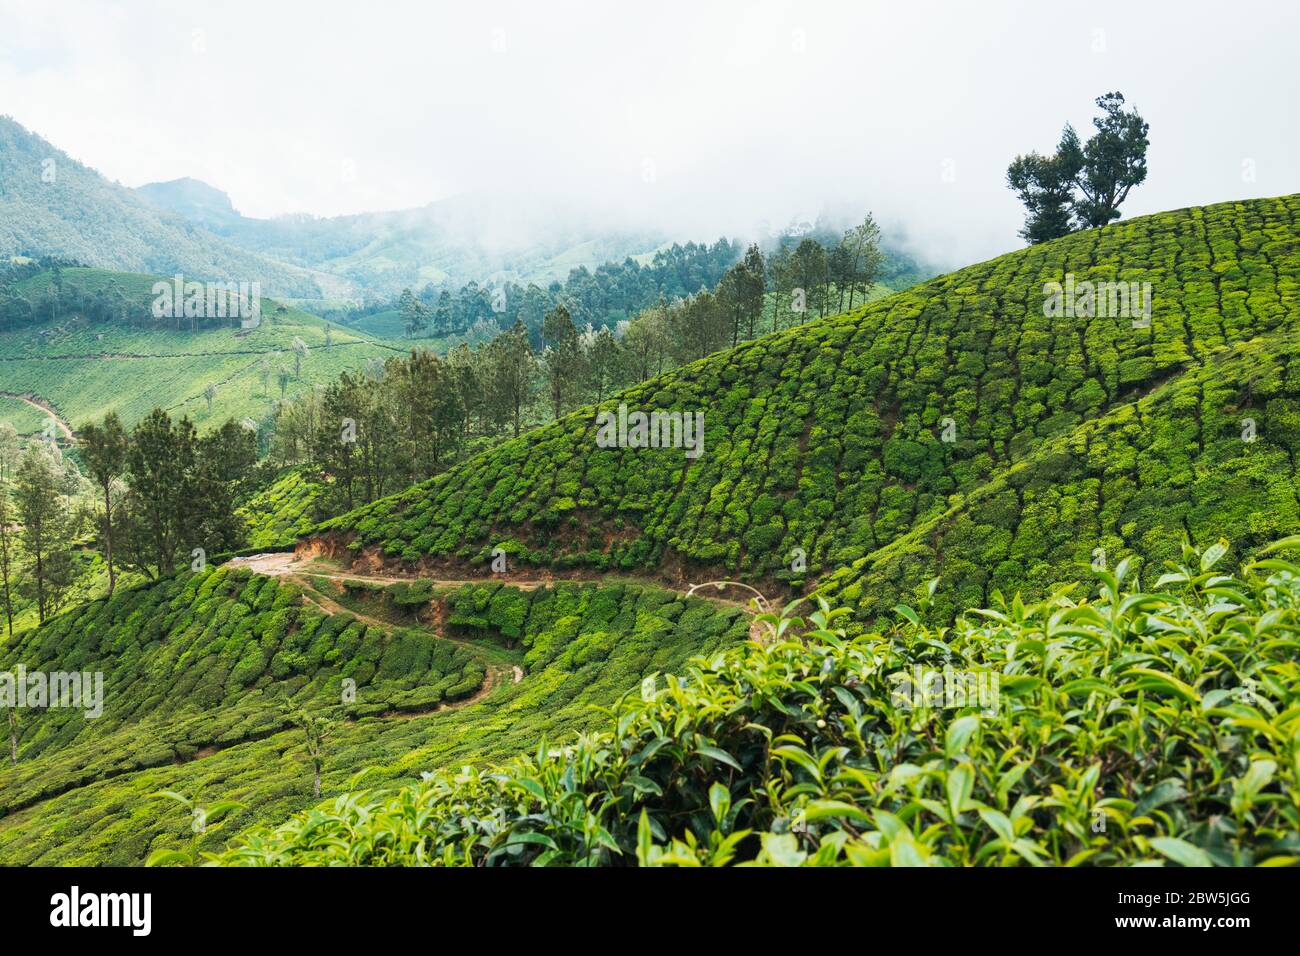 Des rangées de feuilles de thé et de chênes argentés (pour fournir de l'ombre) couvrent les collines de Munnar, en Inde Banque D'Images